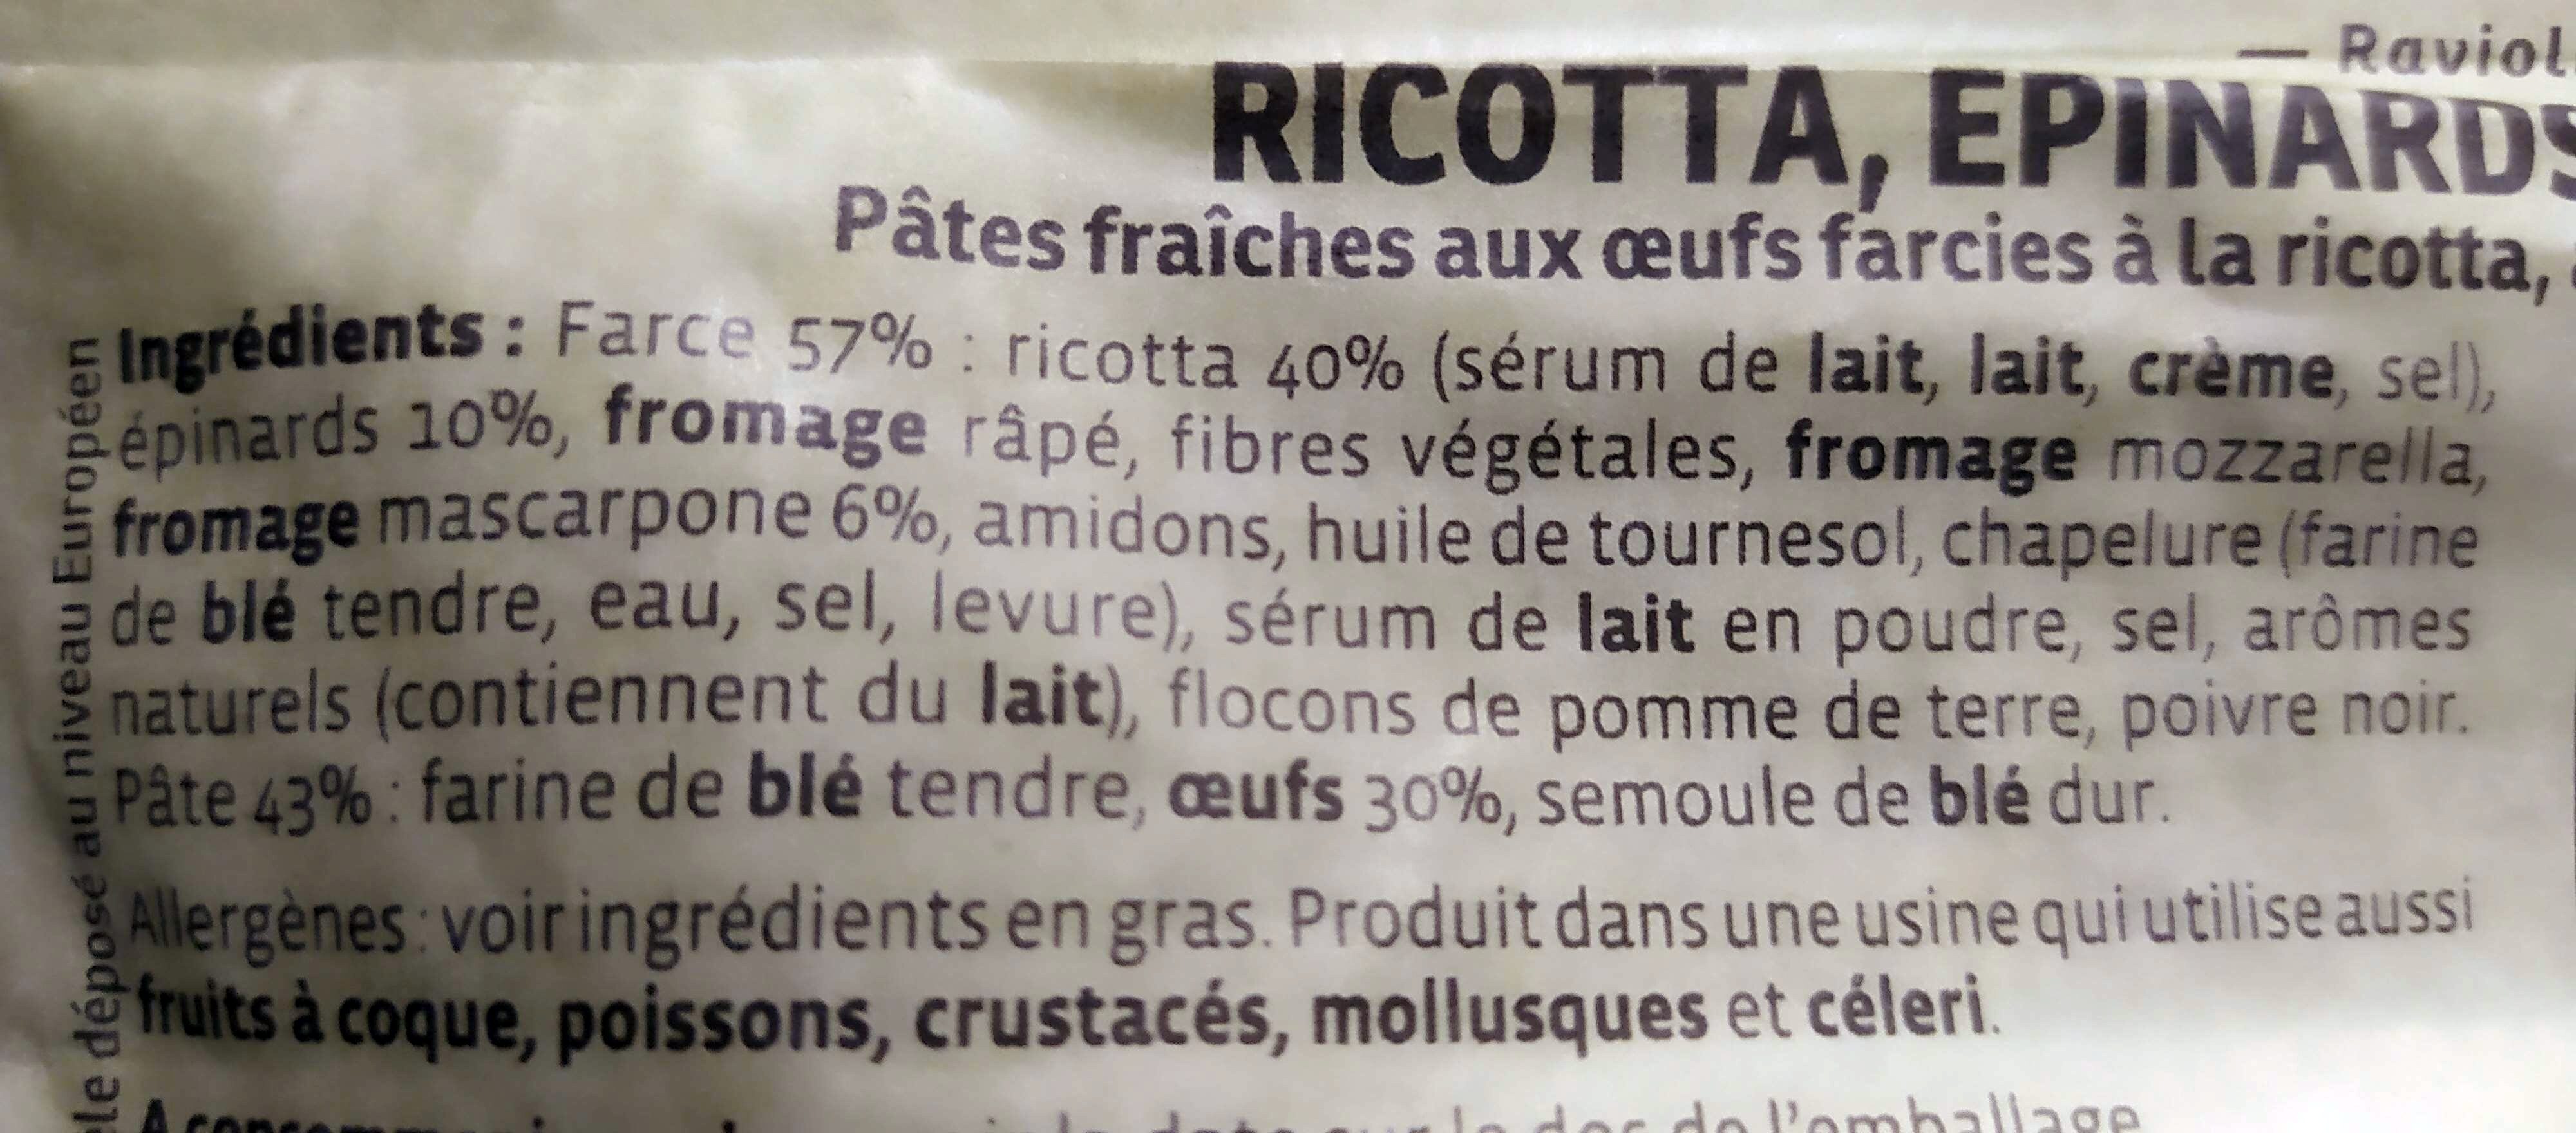 RAVIOLI RICOTTA EPINARDS MASCARPONE - Ingredients - fr